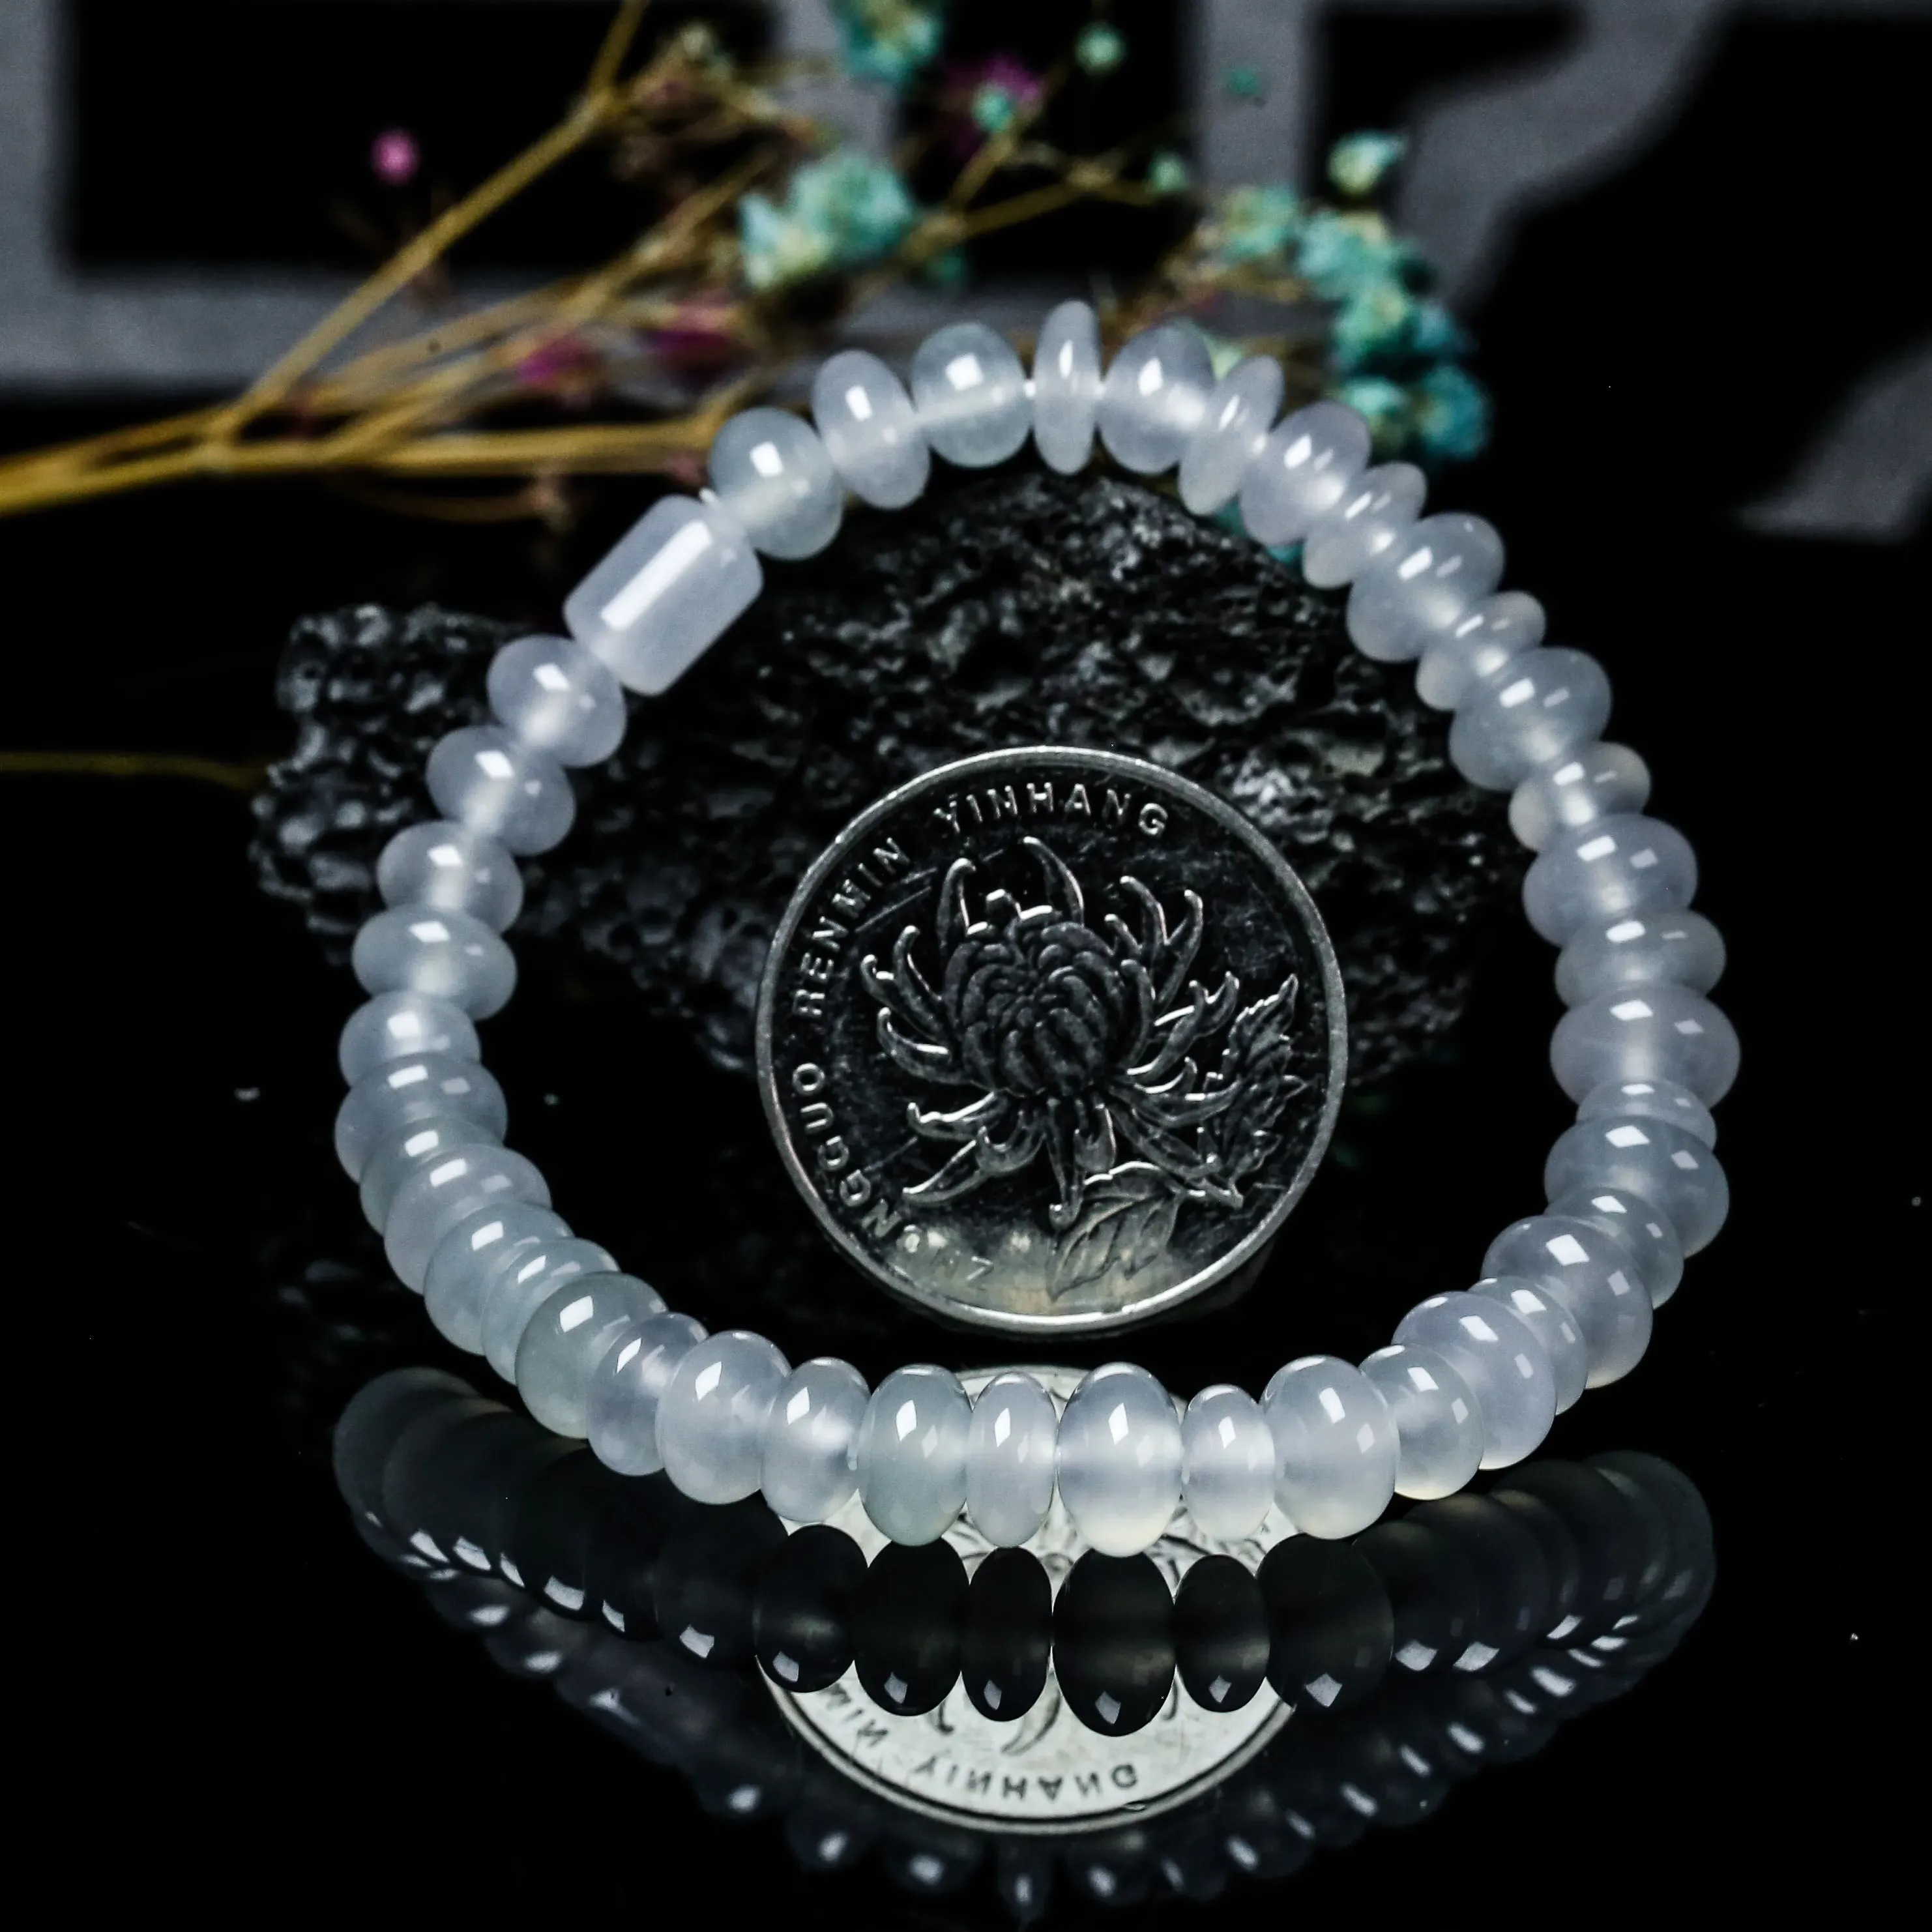 推荐款冰种珠子翡翠手串。共42颗珠子，取其中一颗珠尺寸大约6.8*4mm，冰透水润，质地细腻。上手佩戴效果佳。